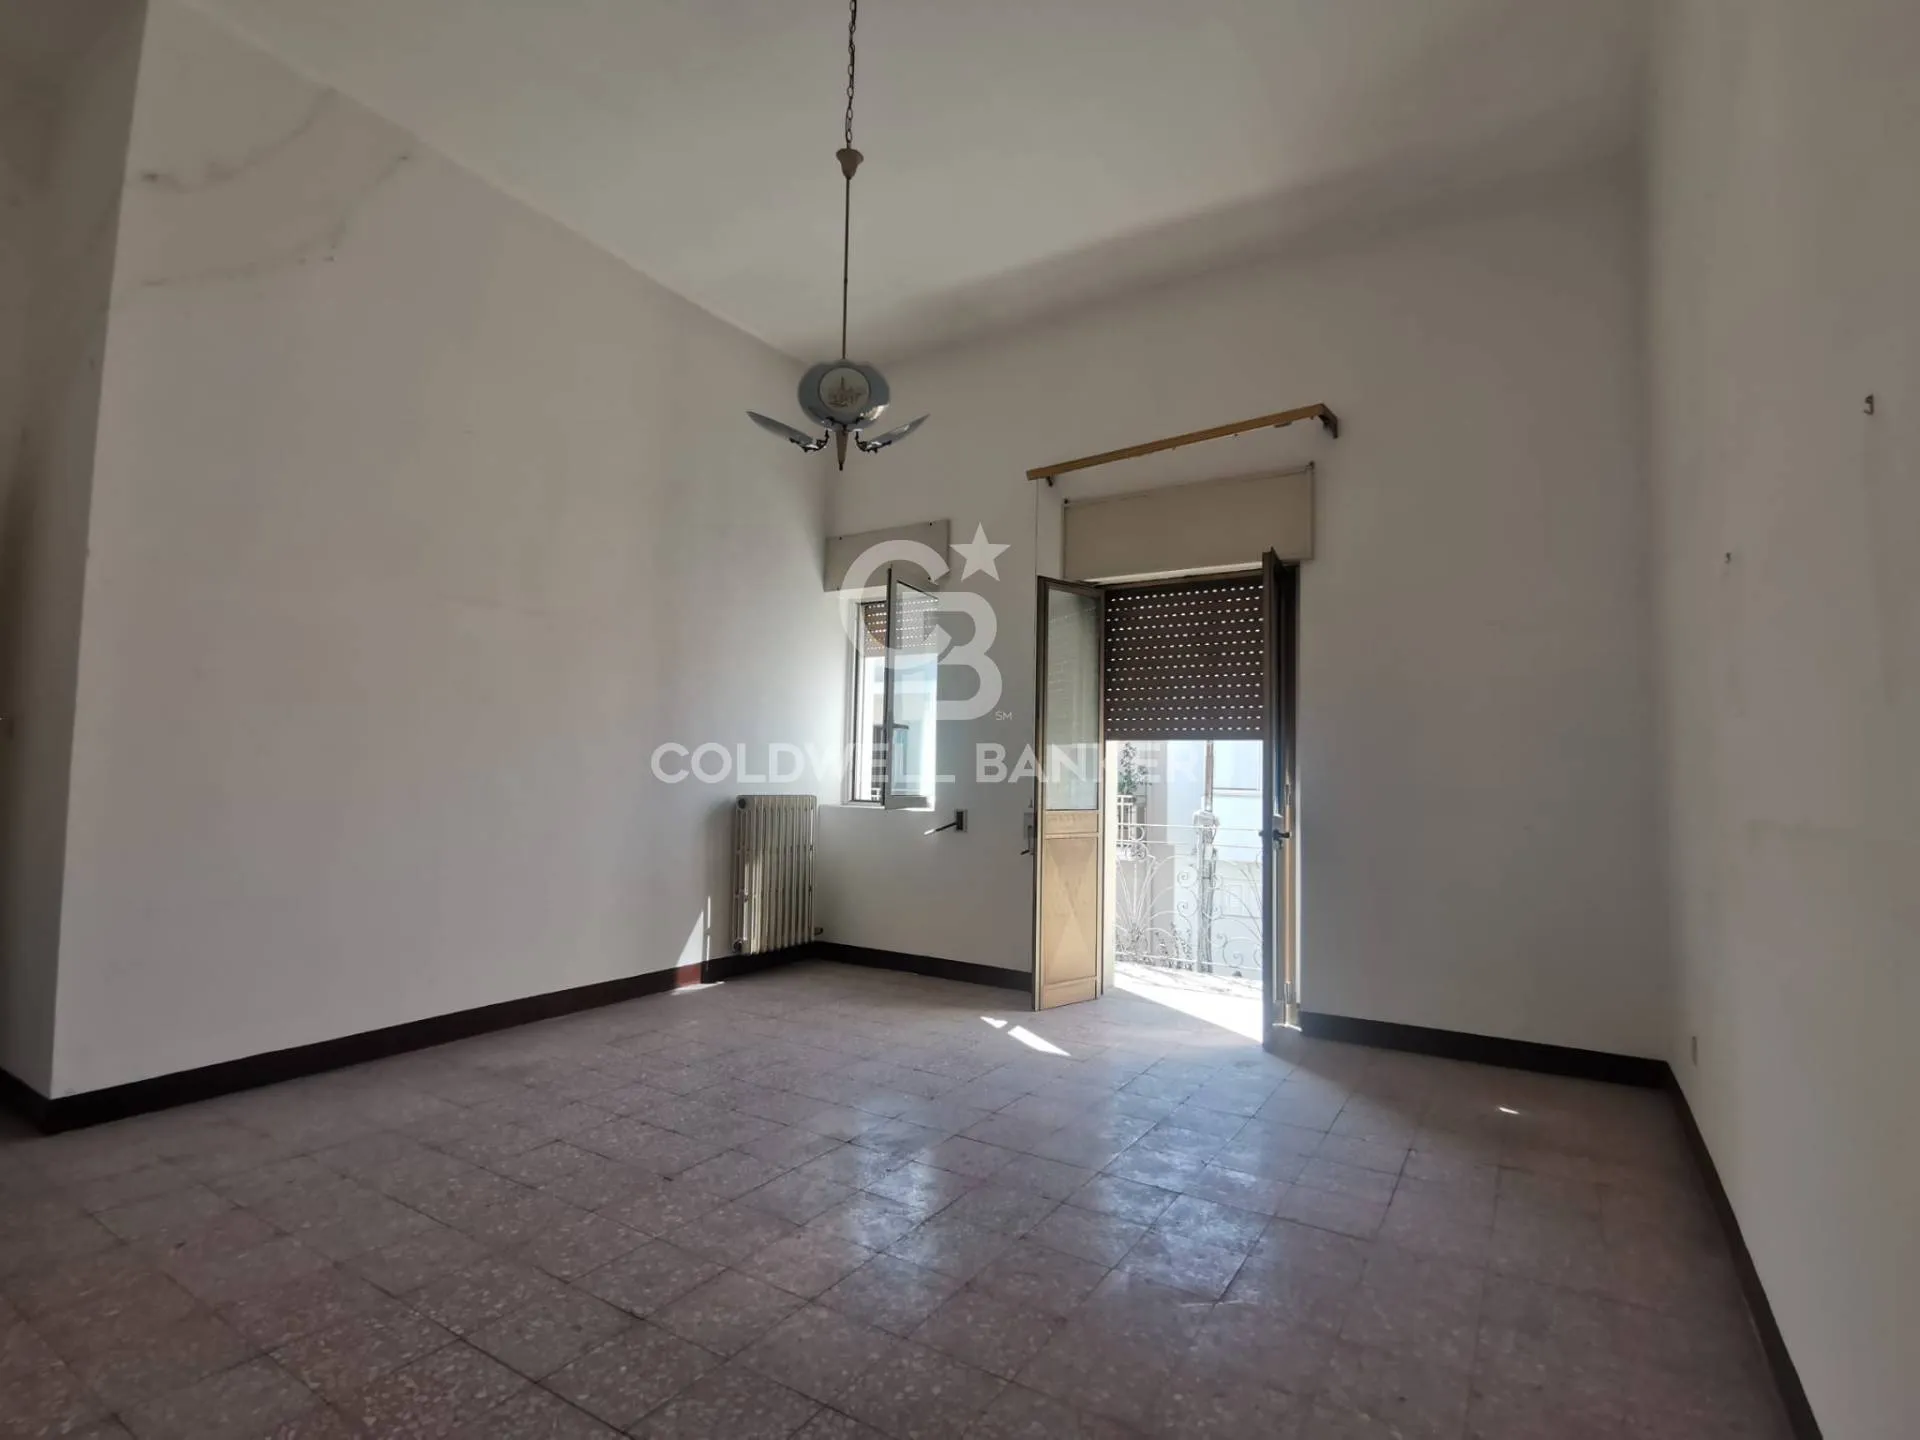 Immagine per Appartamento in vendita a Cutrofiano Via Gradisca